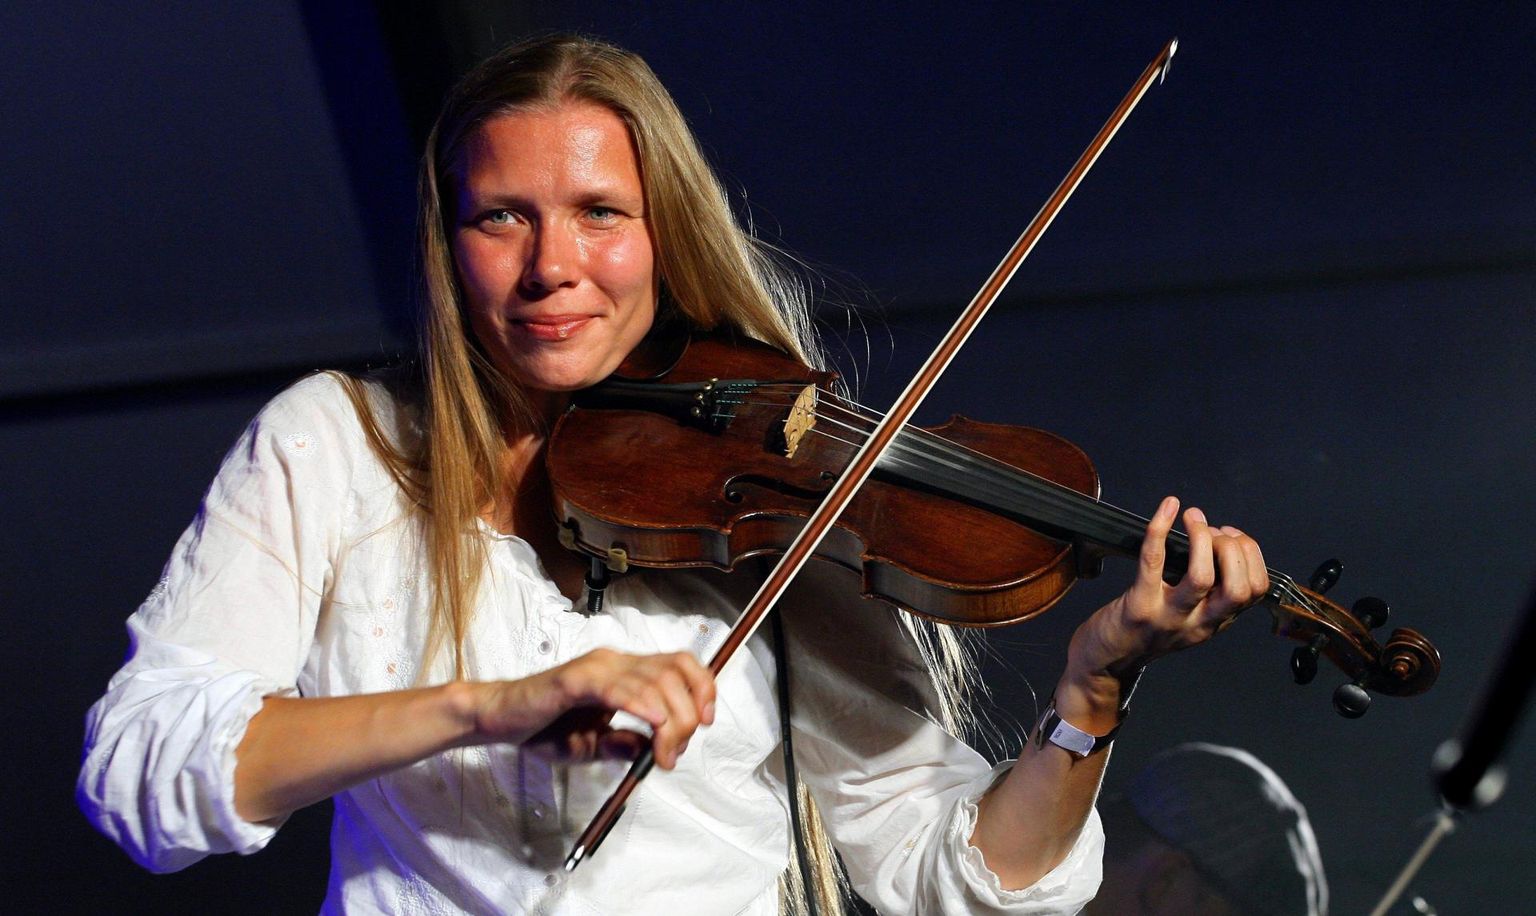 Viimane kord astusid Vägilased lavale 11 aastat tagasi Vljandi pärimusmuusika festivail. Pildil on ansambli solist Meelika Hainsoo.